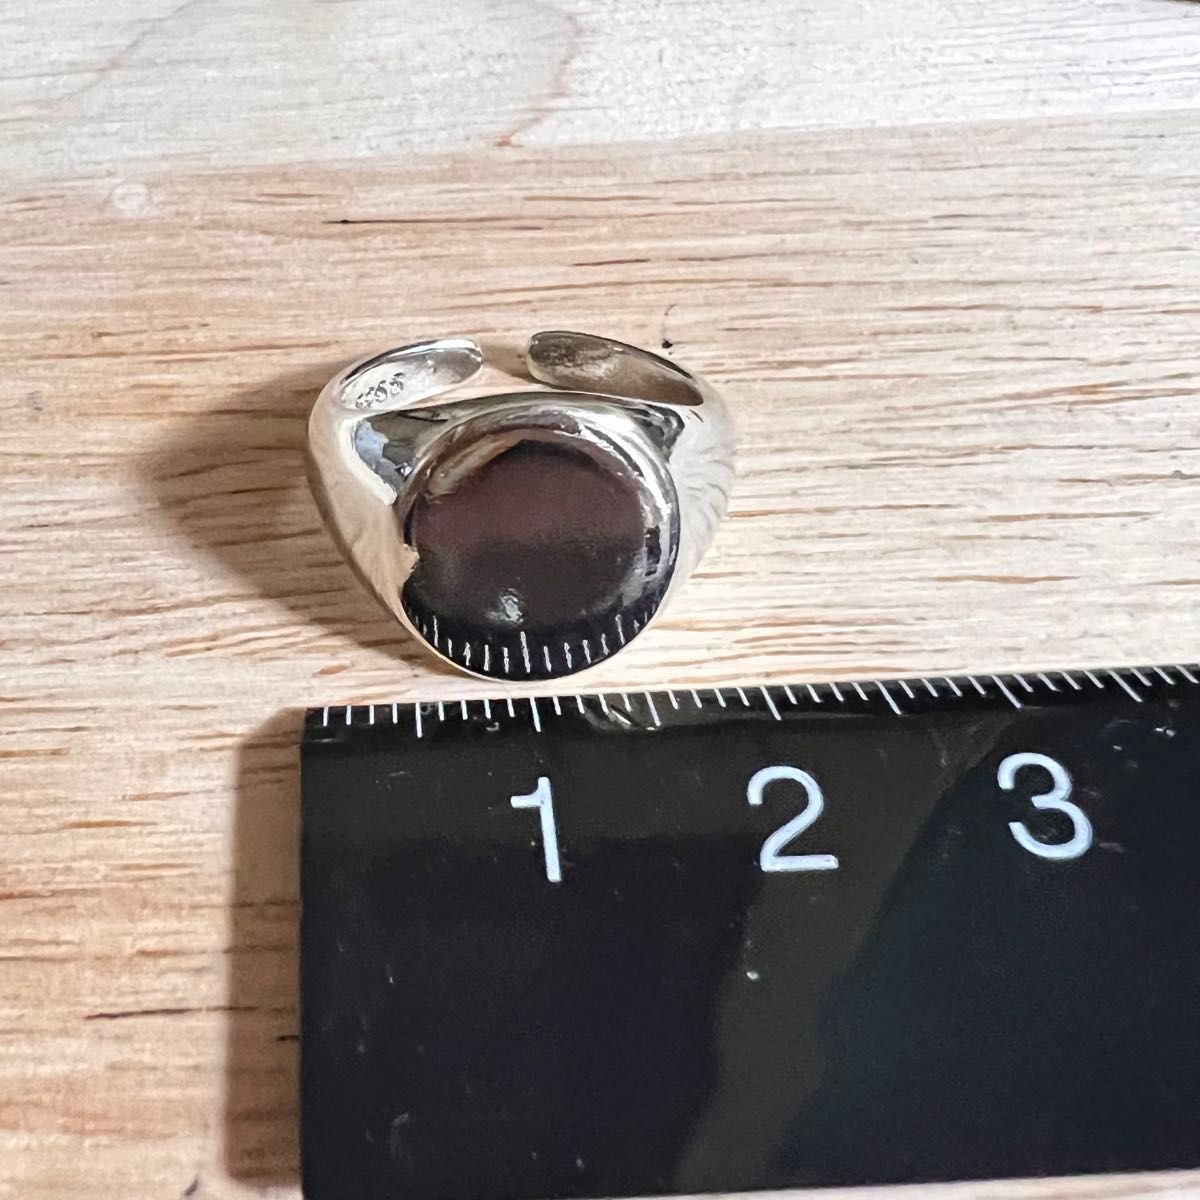 シルバーリング 925 シグネット 丸型 オーバル 楕円 印台 韓国 指輪④